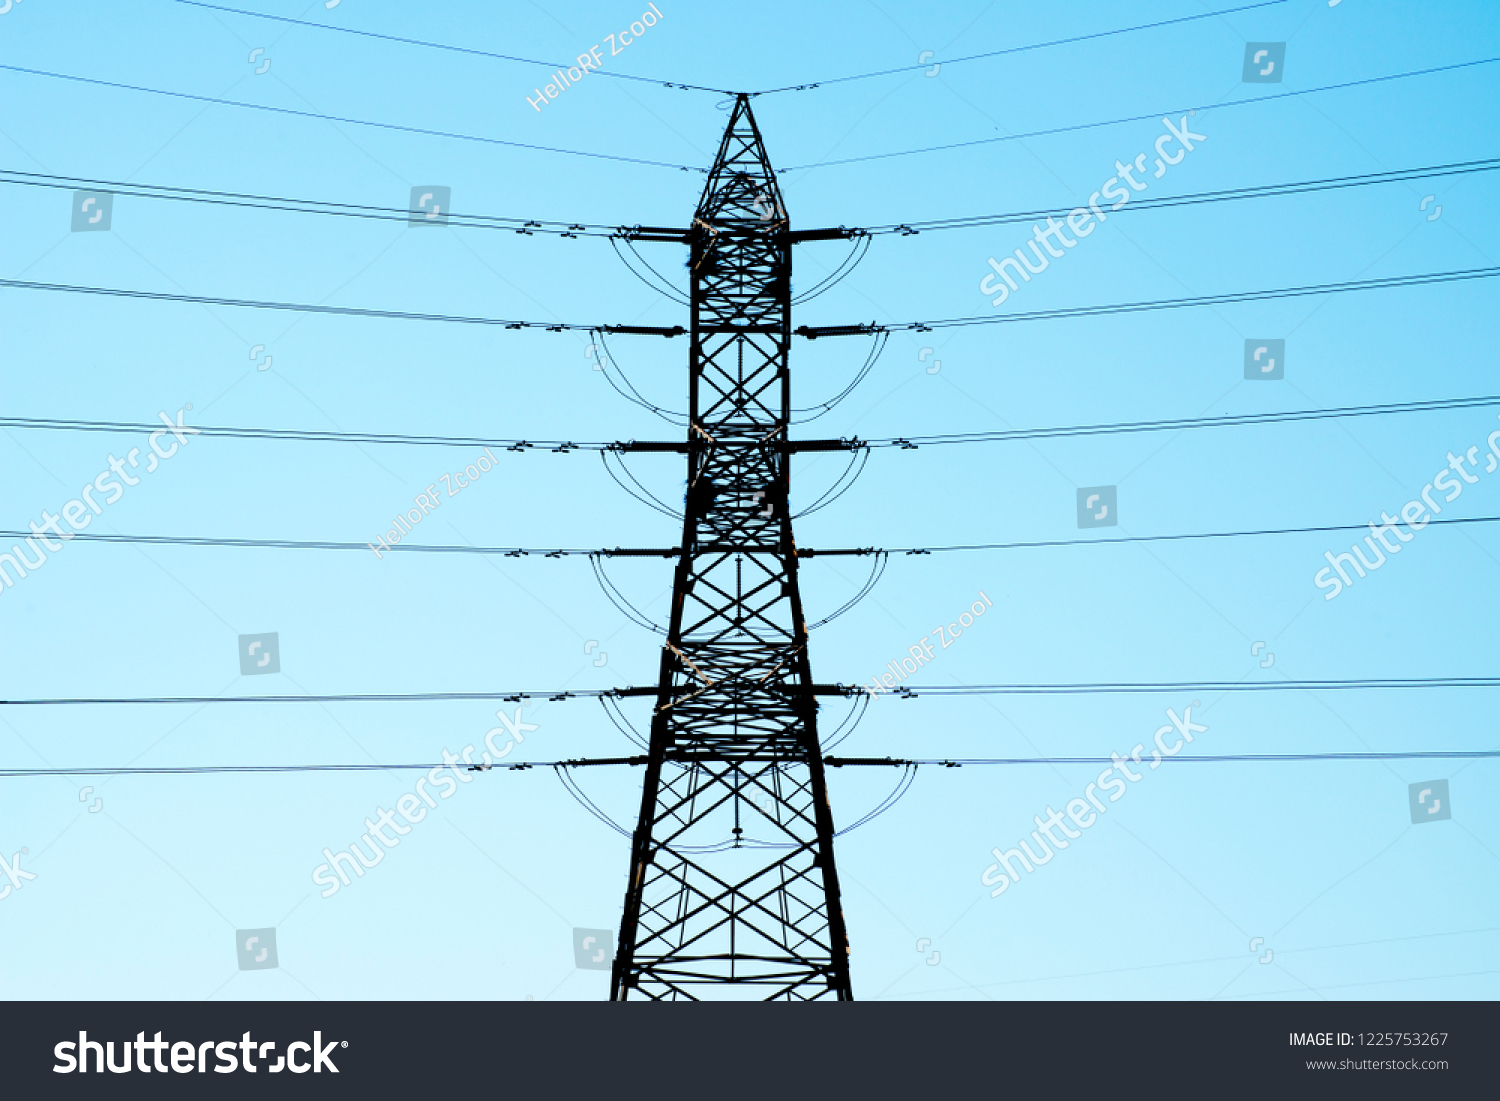 High voltage transmission line and transmission tower under blue sky #1225753267